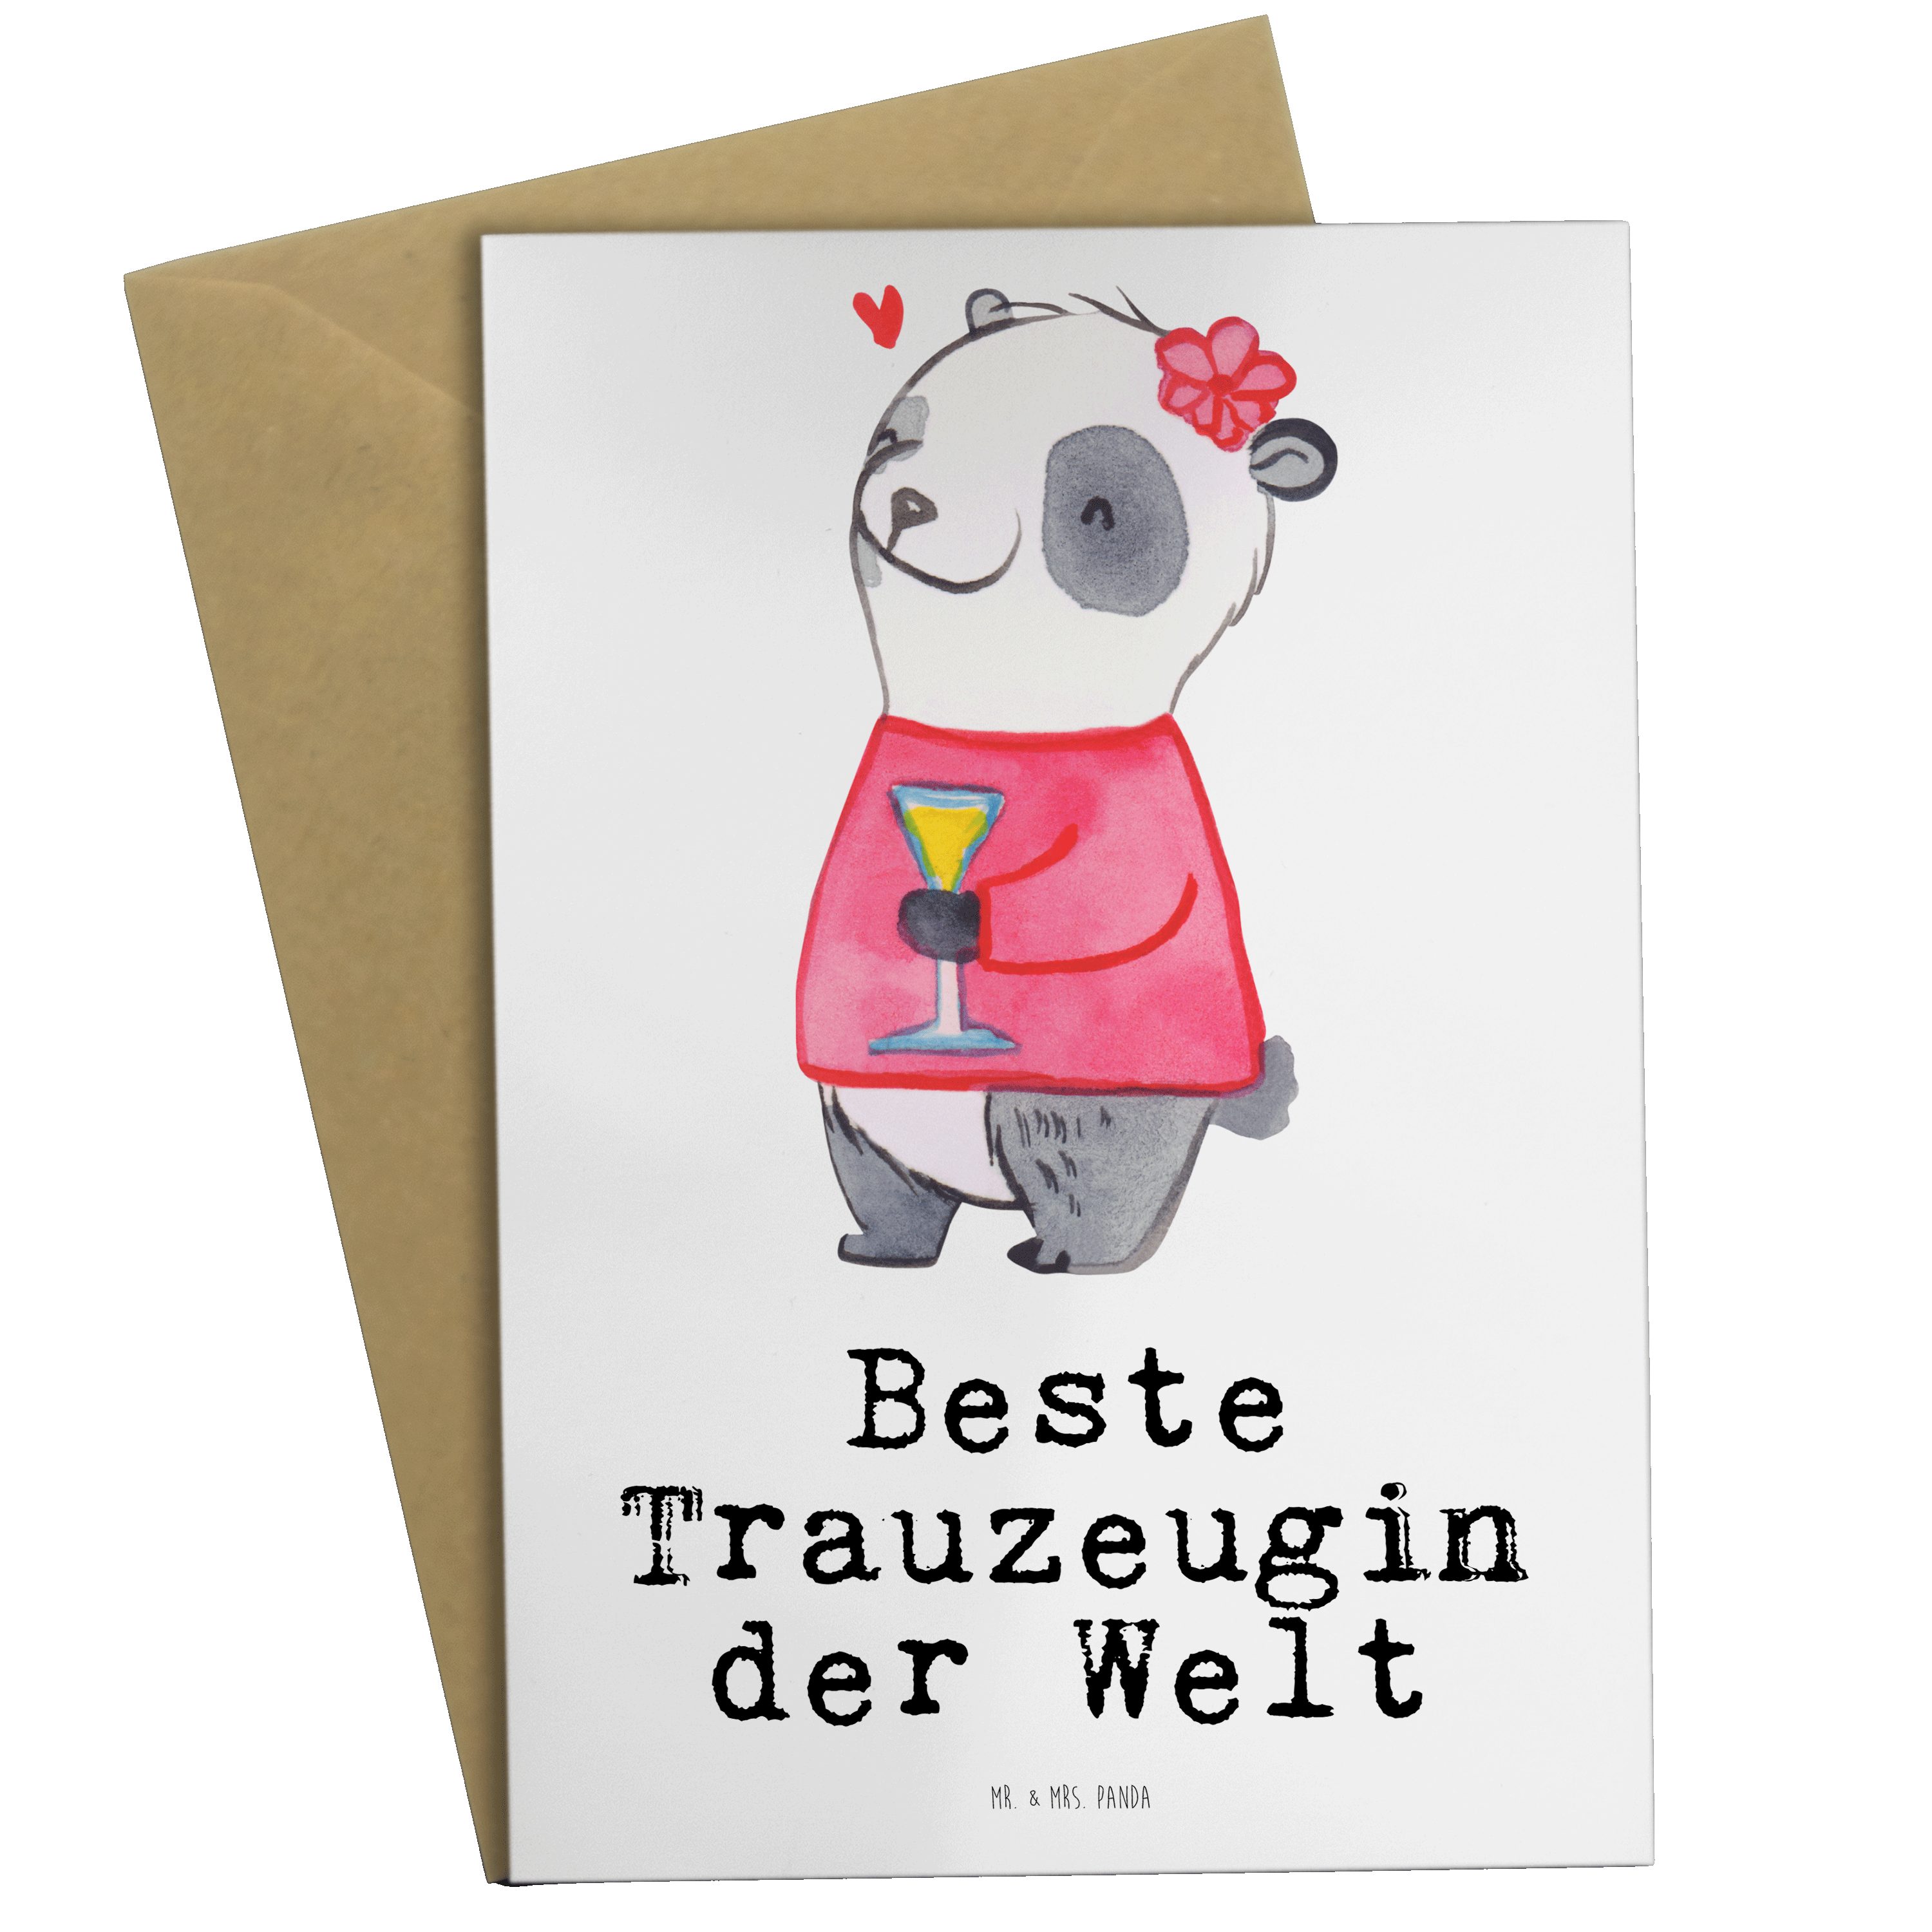 Mr. & Mrs. Panda Grußkarte Panda Beste Trauzeugin der Welt - Weiß - Geschenk, Dankeschön, Hochze, Hochglänzende Veredelung